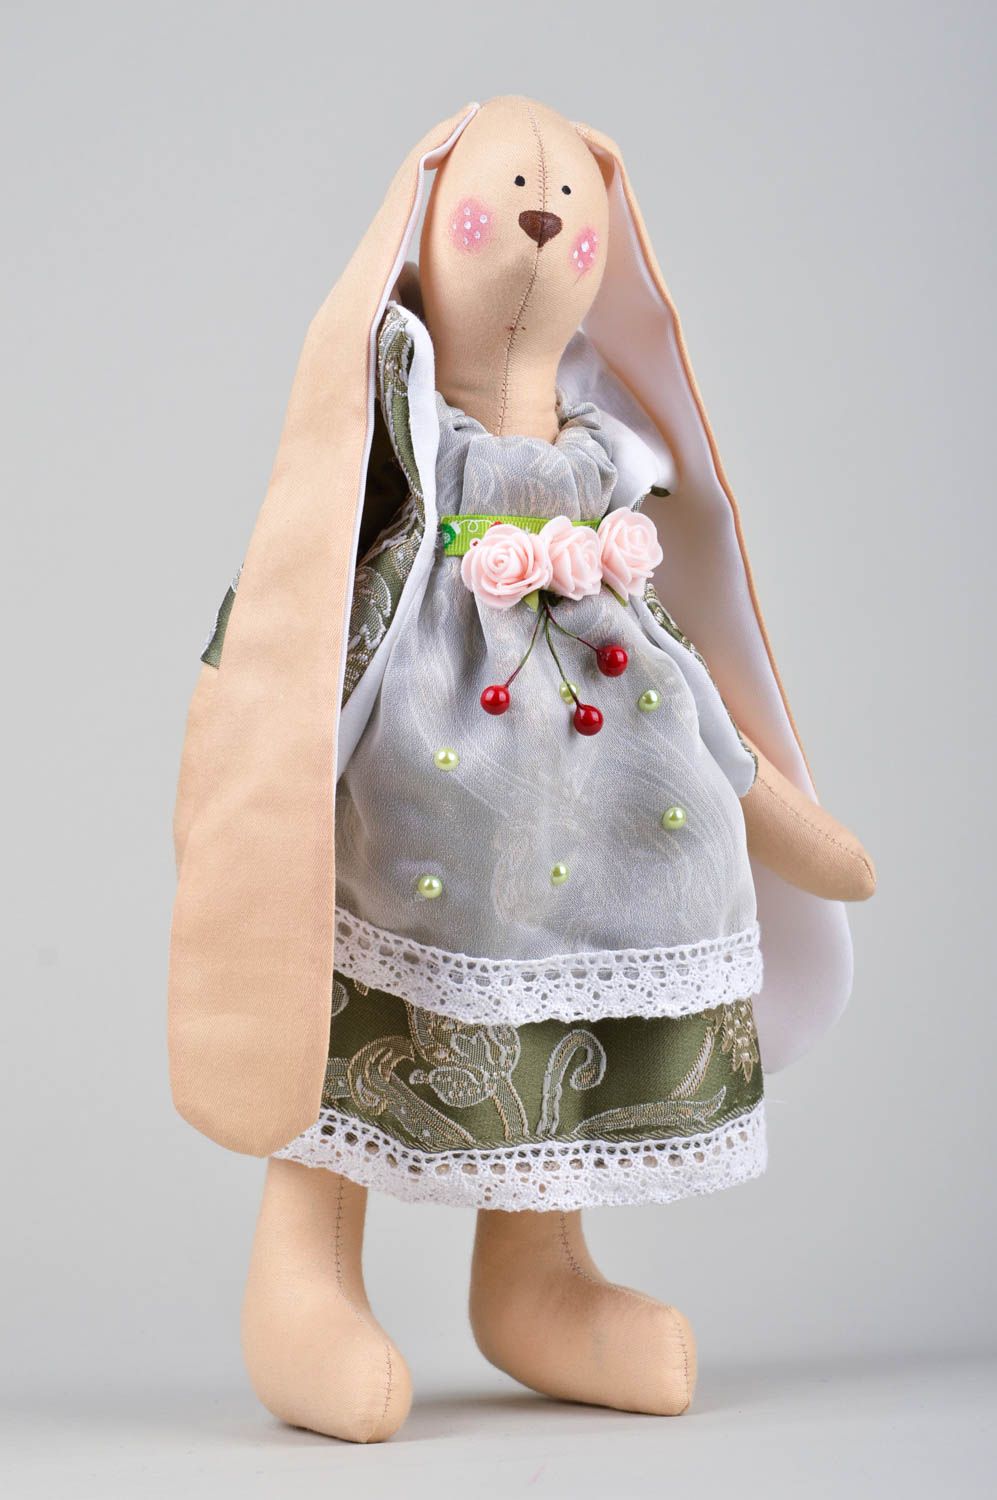 Игрушка заяц хенд мейд авторская игрушка стильный подарок из ткани с росписью фото 1